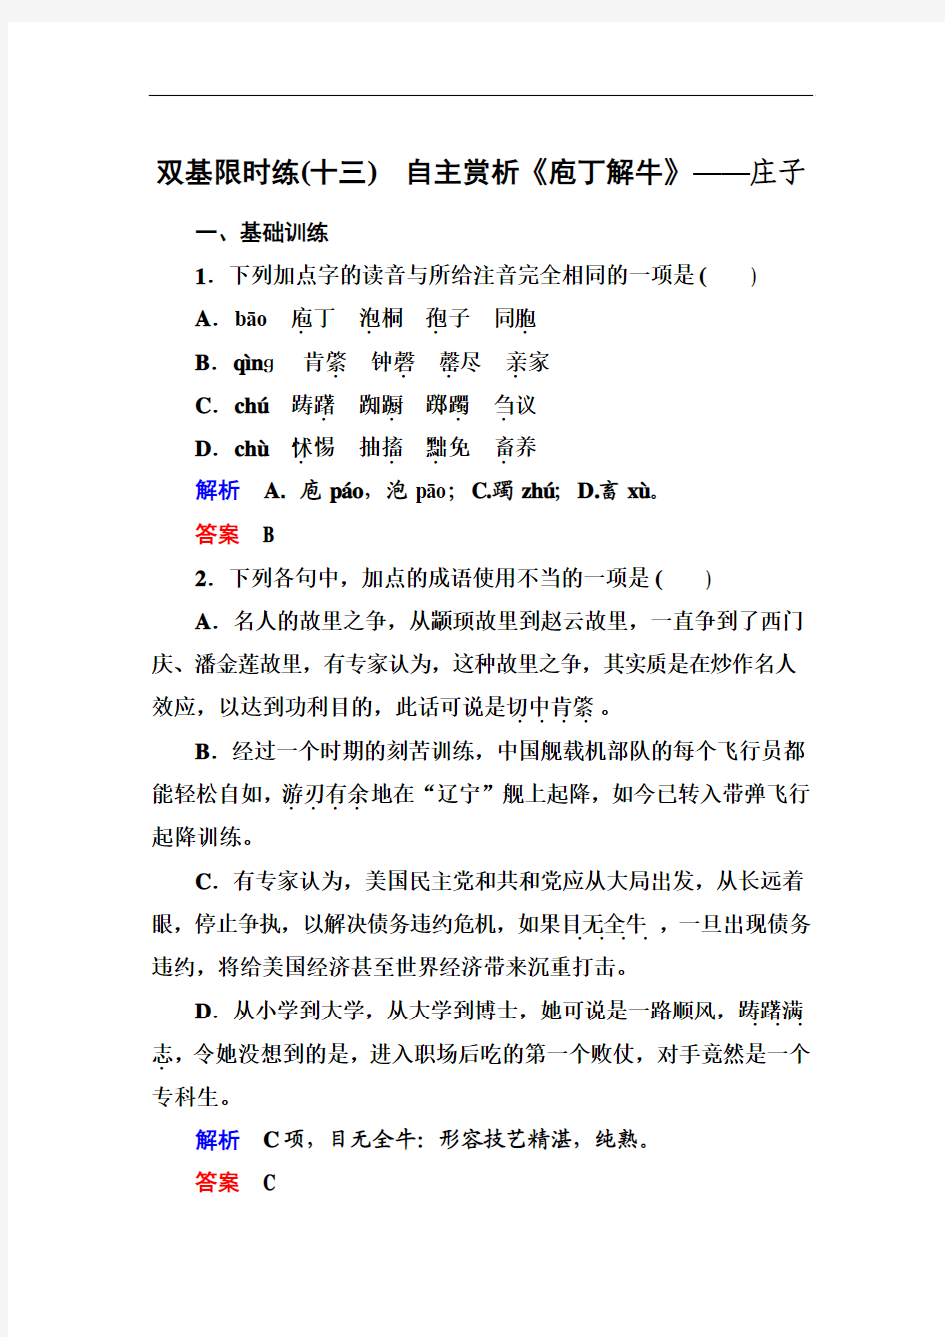 【名师一号】2015高中语文(选修-中国古代诗歌欣)双基限时练13 自主赏析《庖丁解牛》]